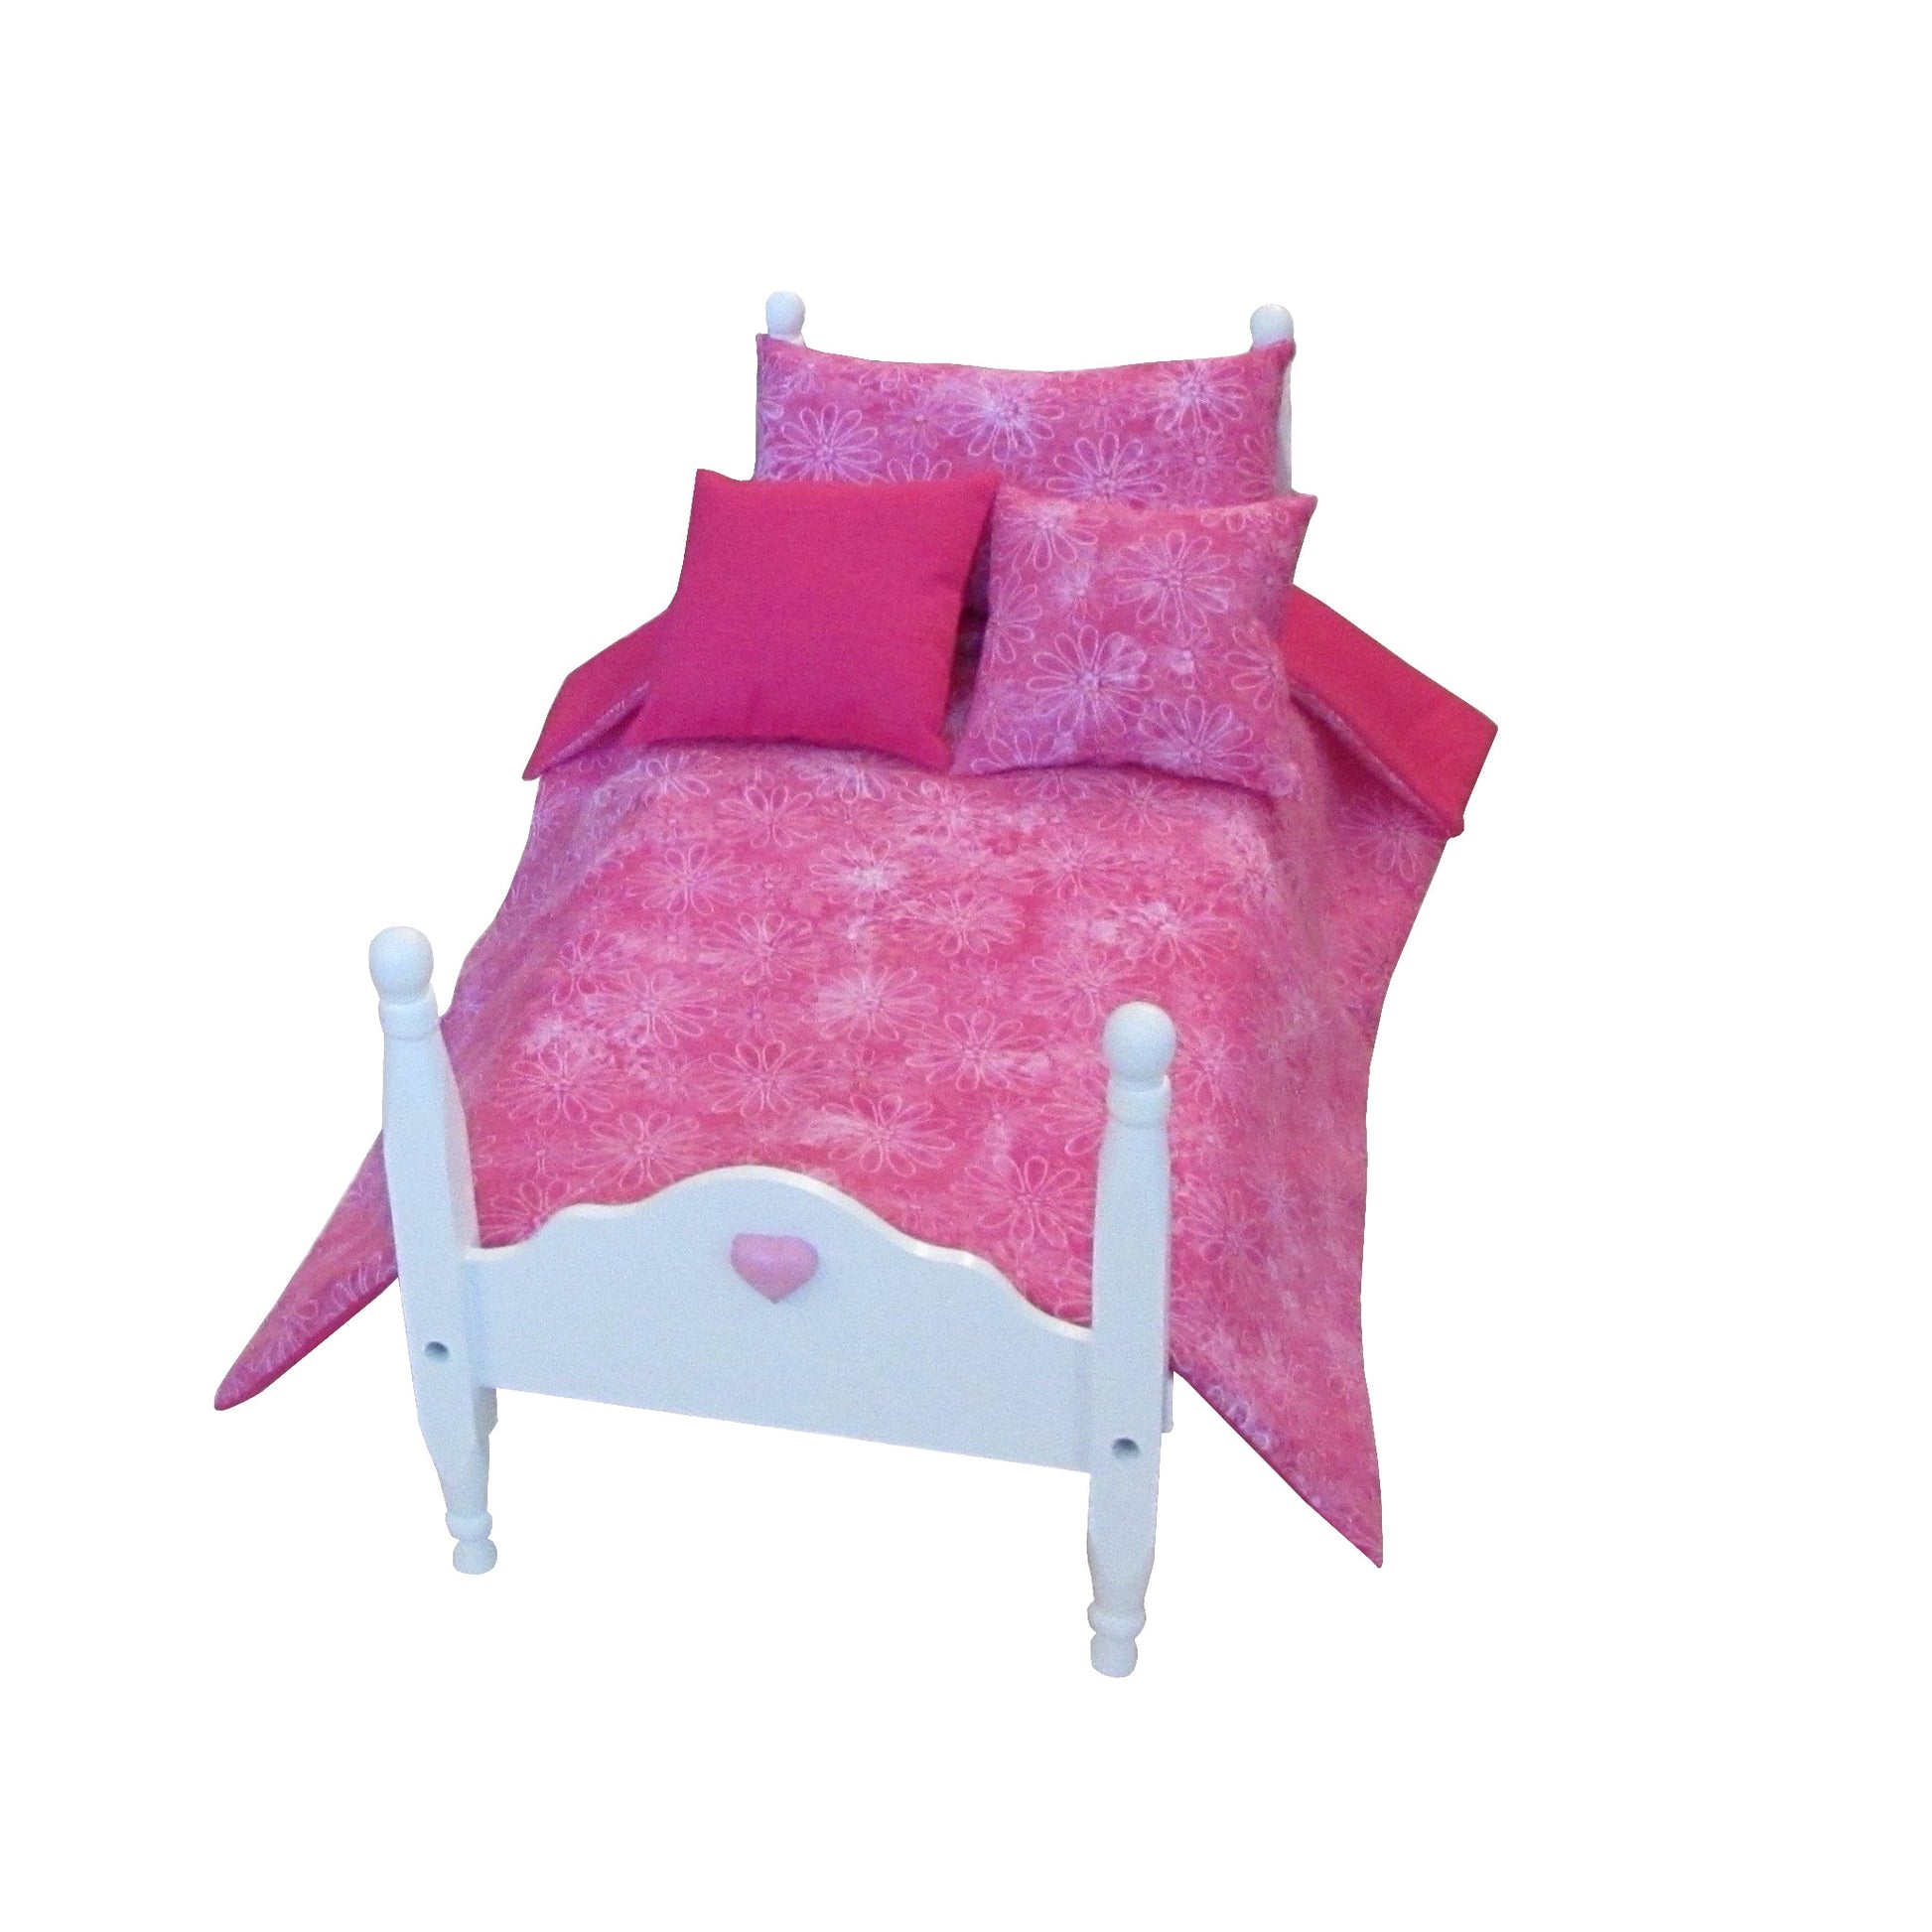 Pink Floral Doll Comforter Set for 18-inch dolls